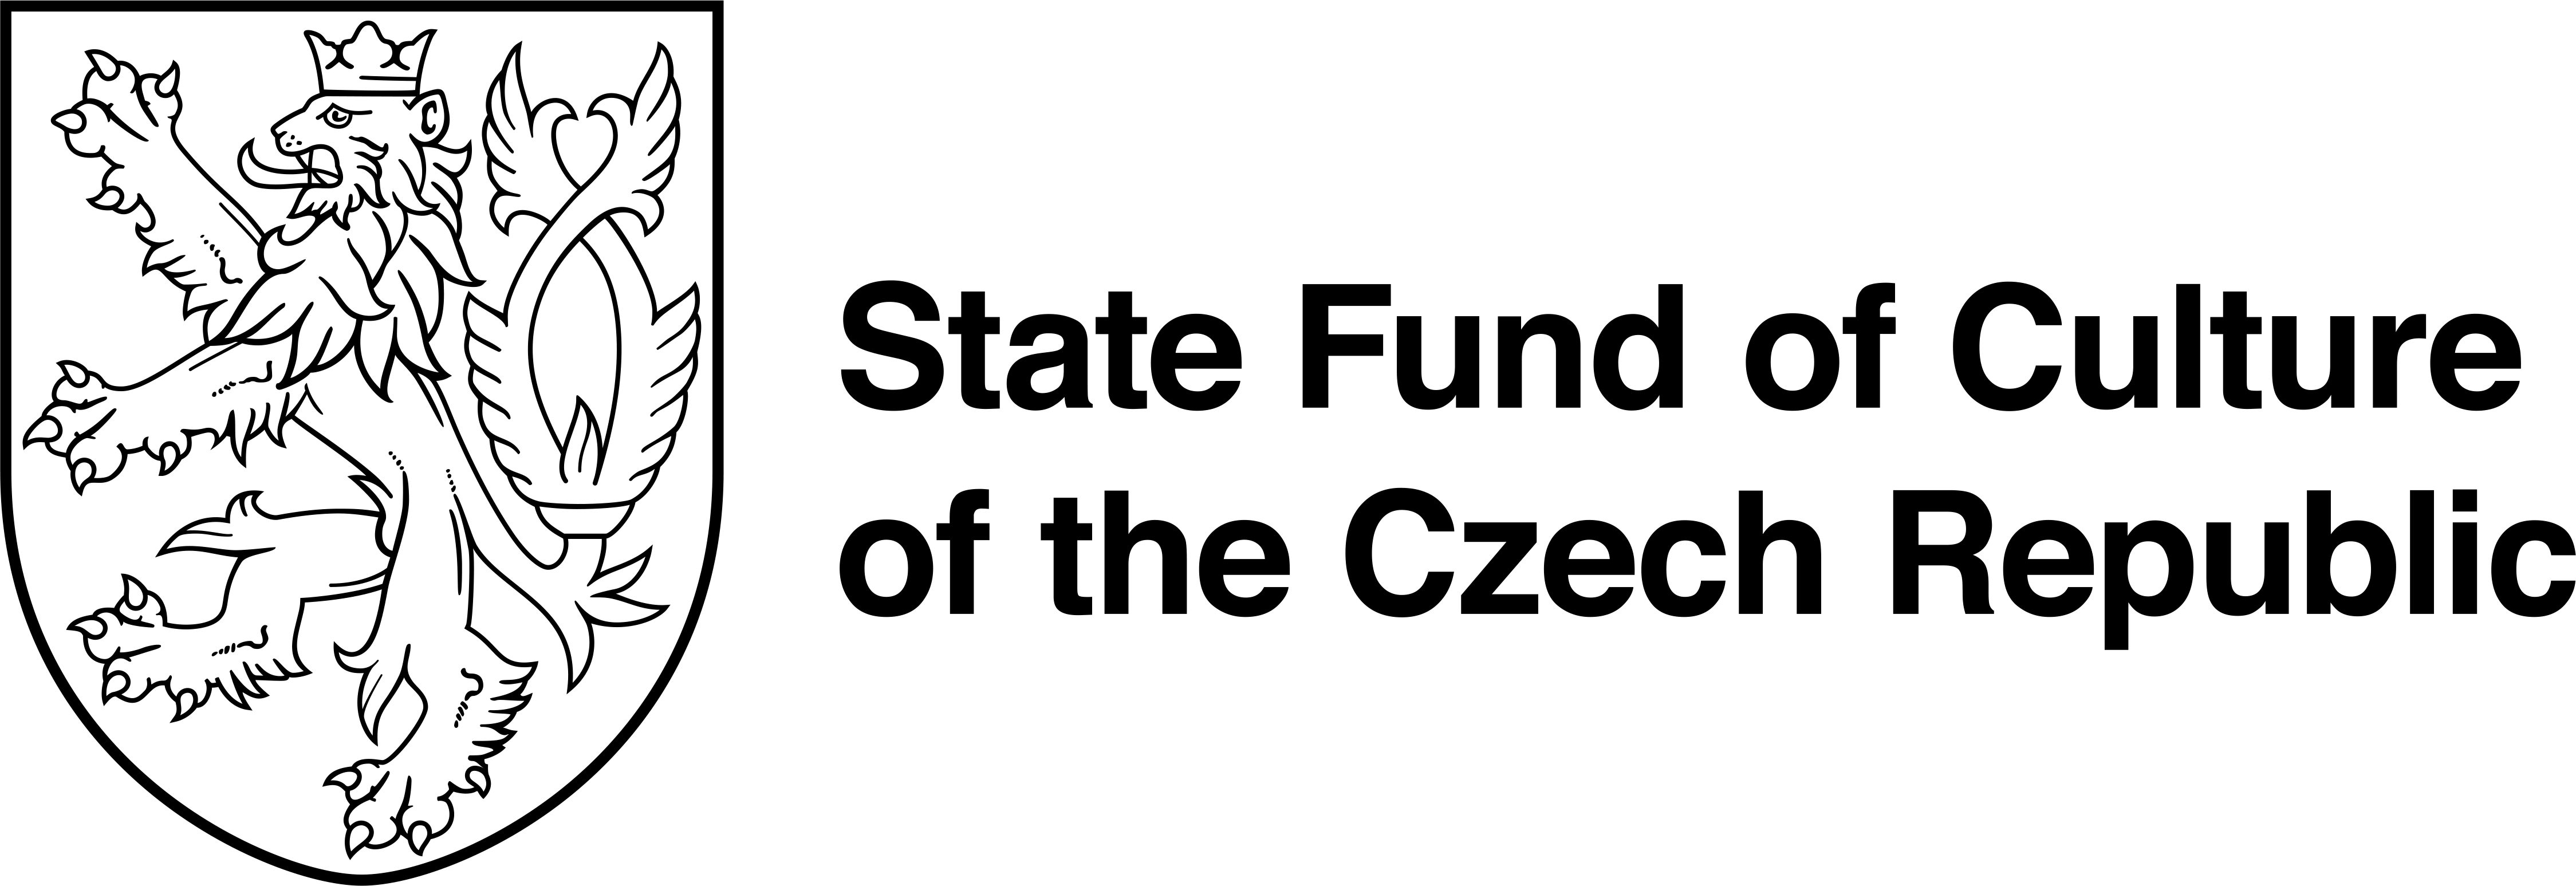 logo-cernobile-anglicky.png (278 KB)